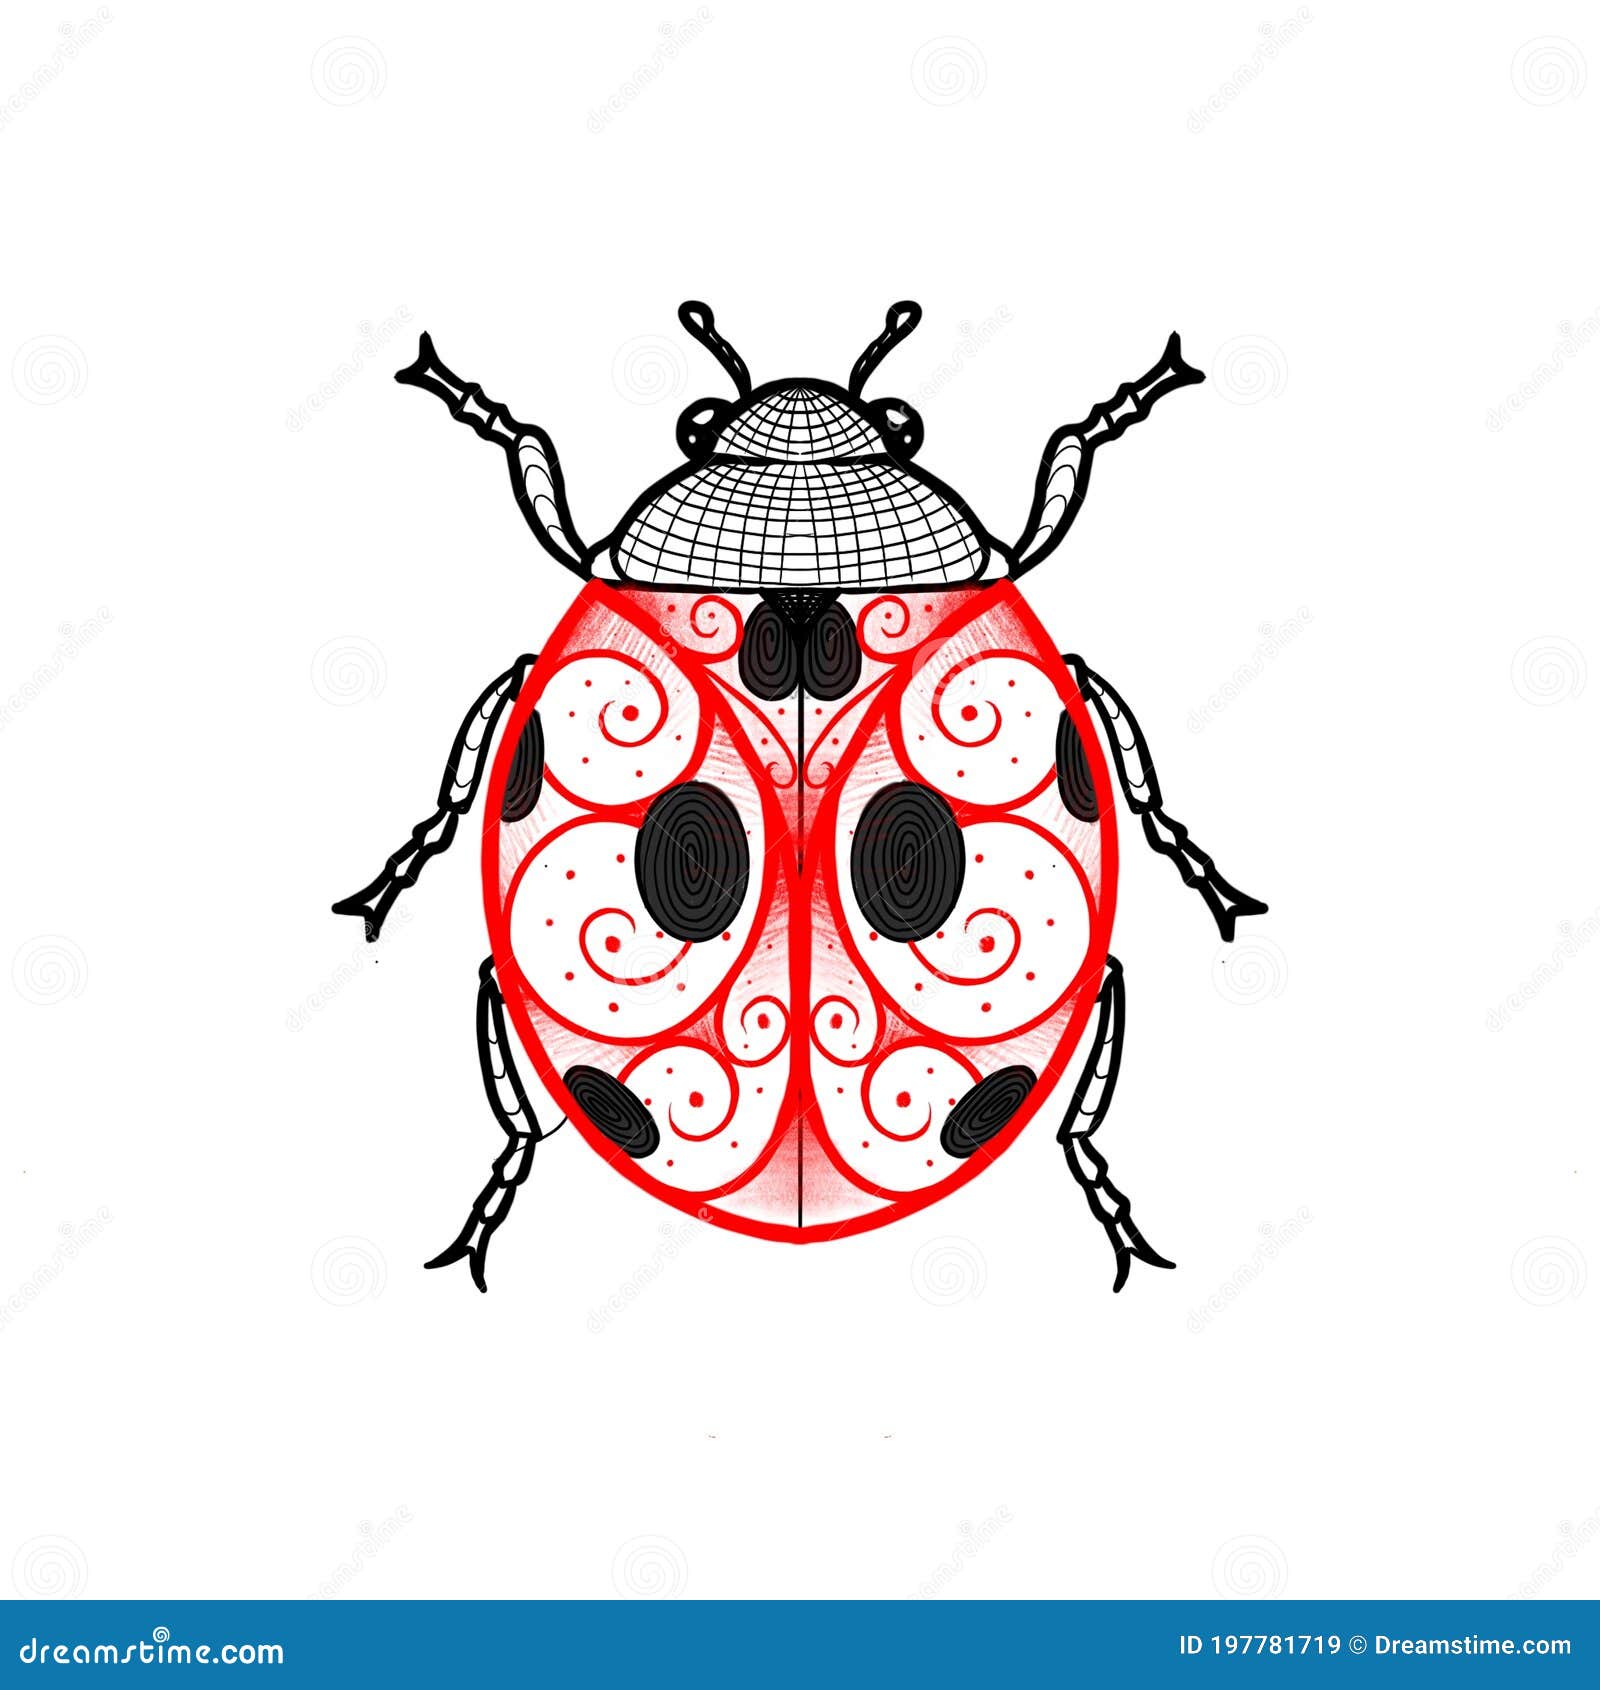 tattoo design linework purple ladybug create procreate ipad app tattoo black red linework ladybug 197781719